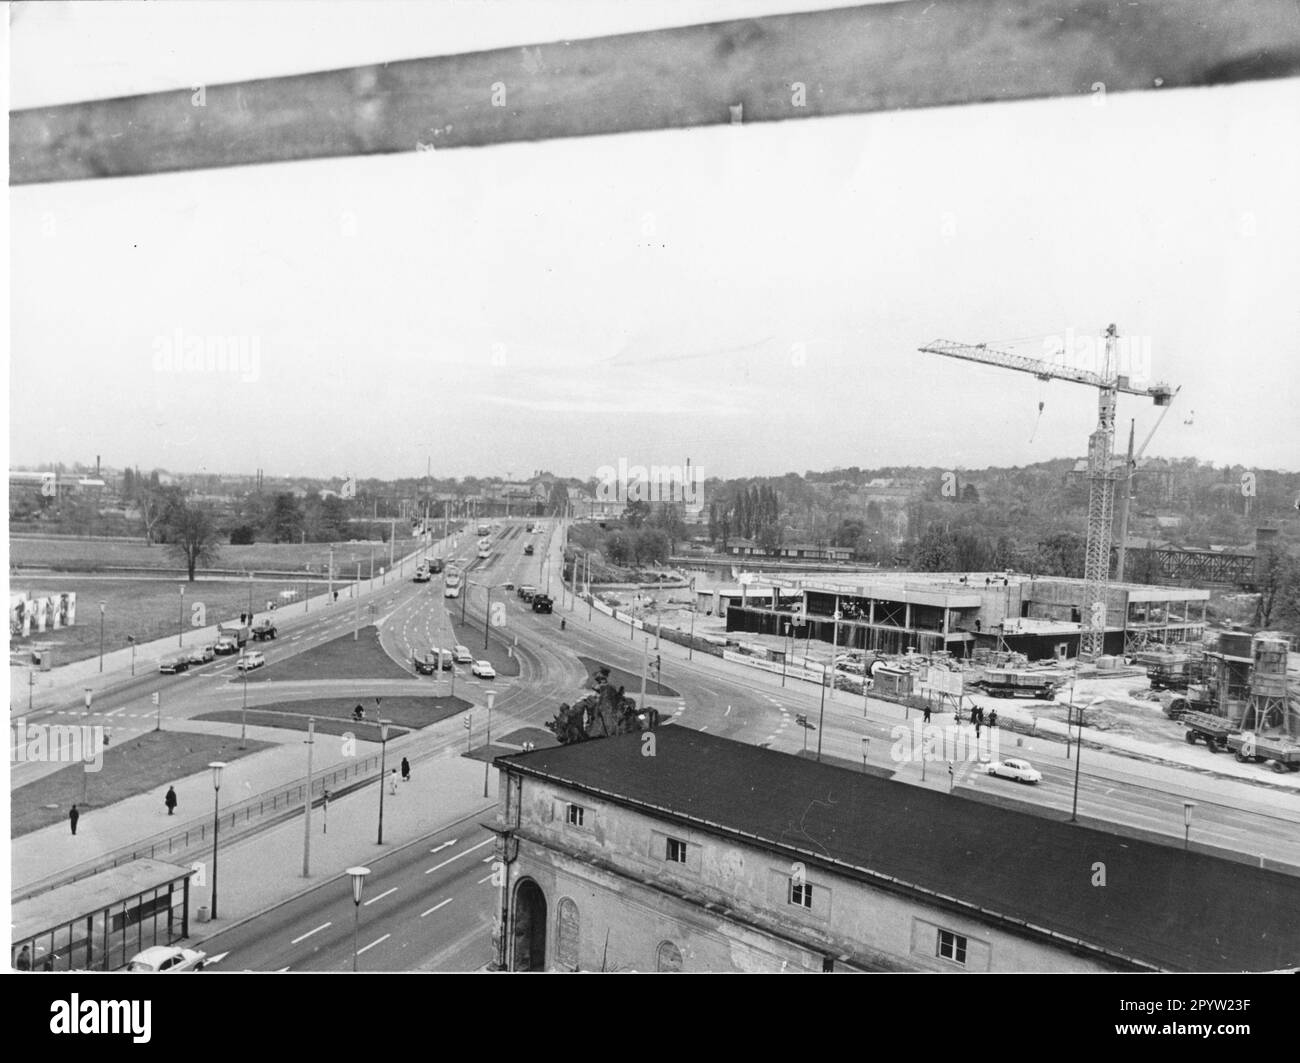 Potsdam beginnt heute mit dem Bau der Baustelle des Interhotel Mercurehotel, Fertigstellung 1969 Foto 1965????? . DDR. Historisch. Foto: Manfred Haseloff [automatisierte Übersetzung] Stockfoto